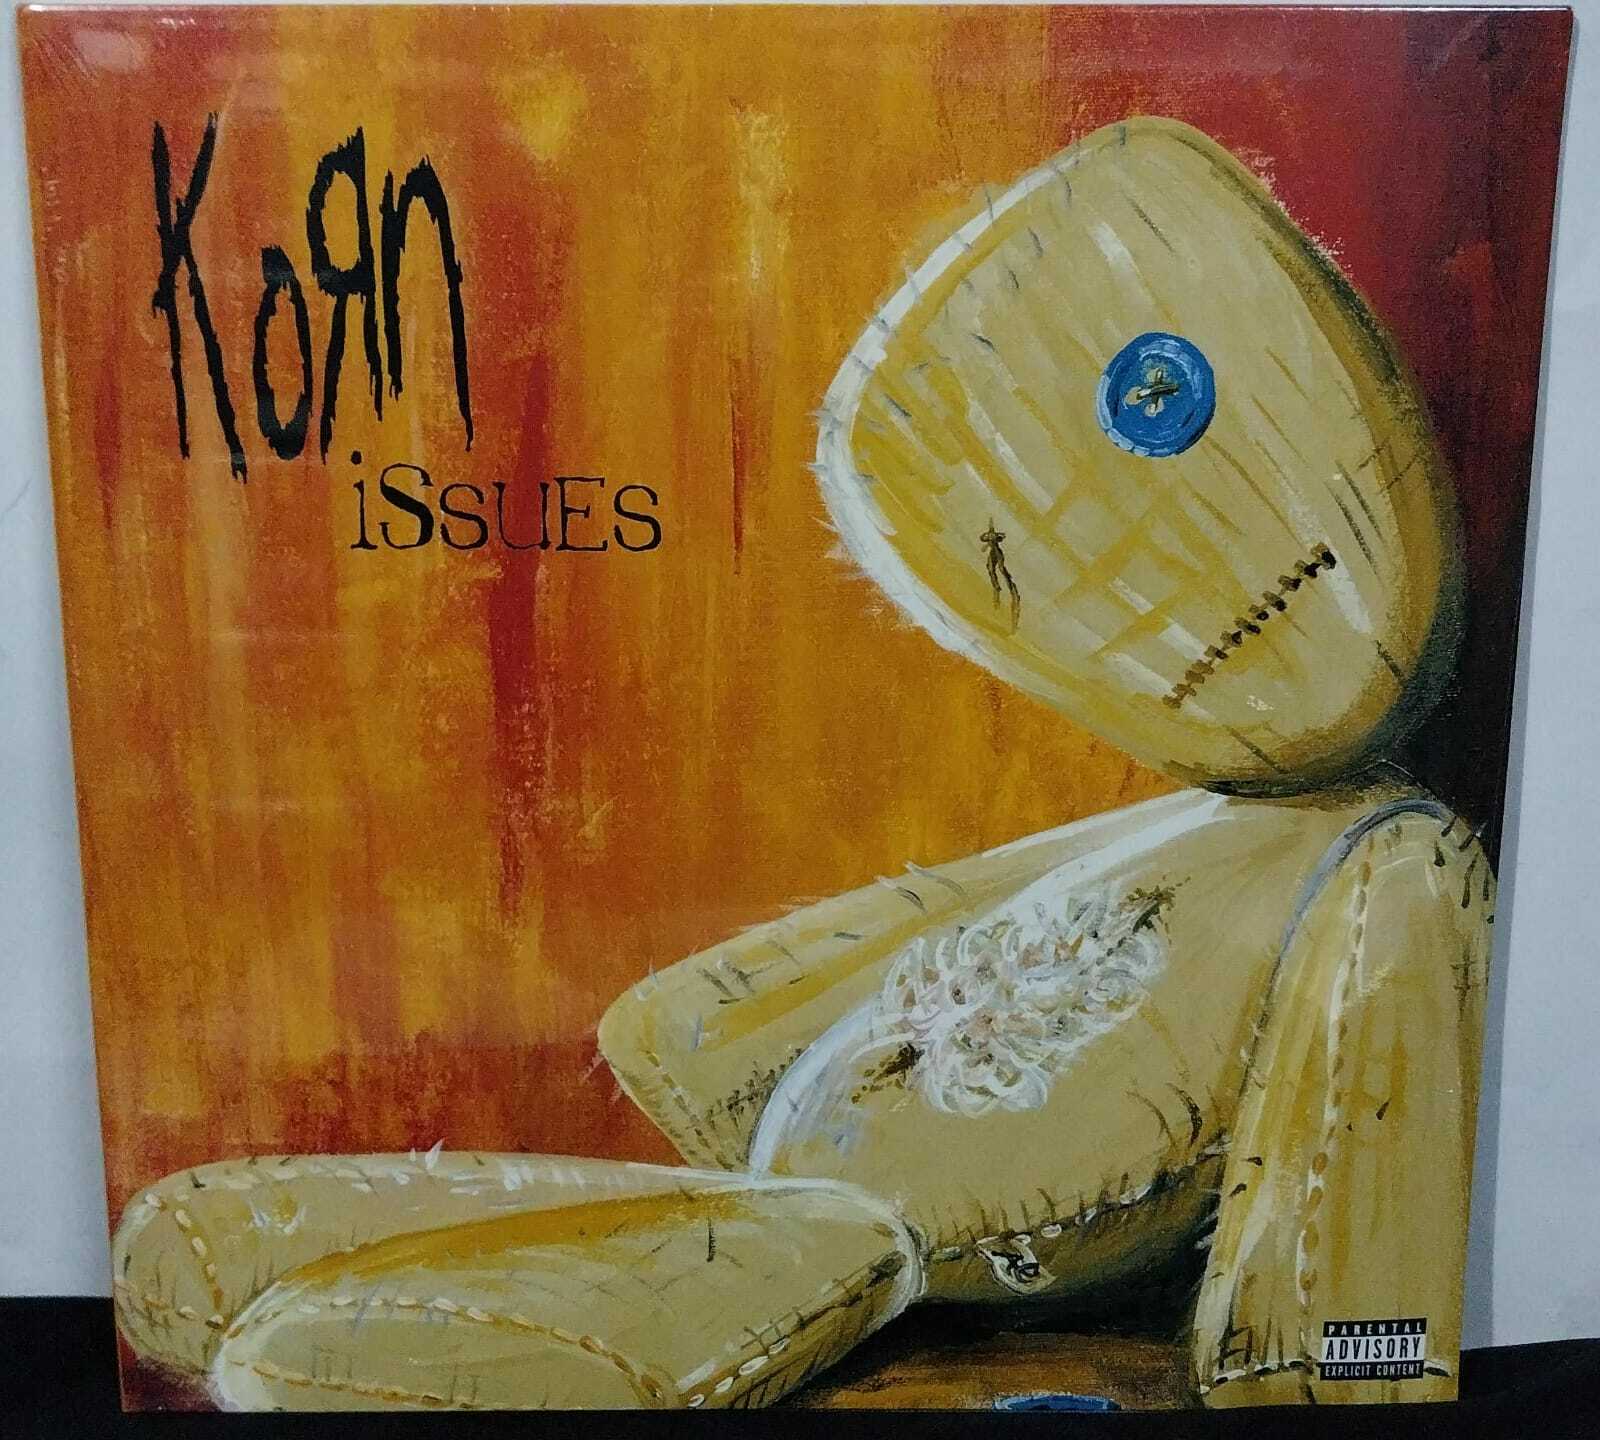 Vinil - Korn - Issues (Lacrado/Duplo/usa)